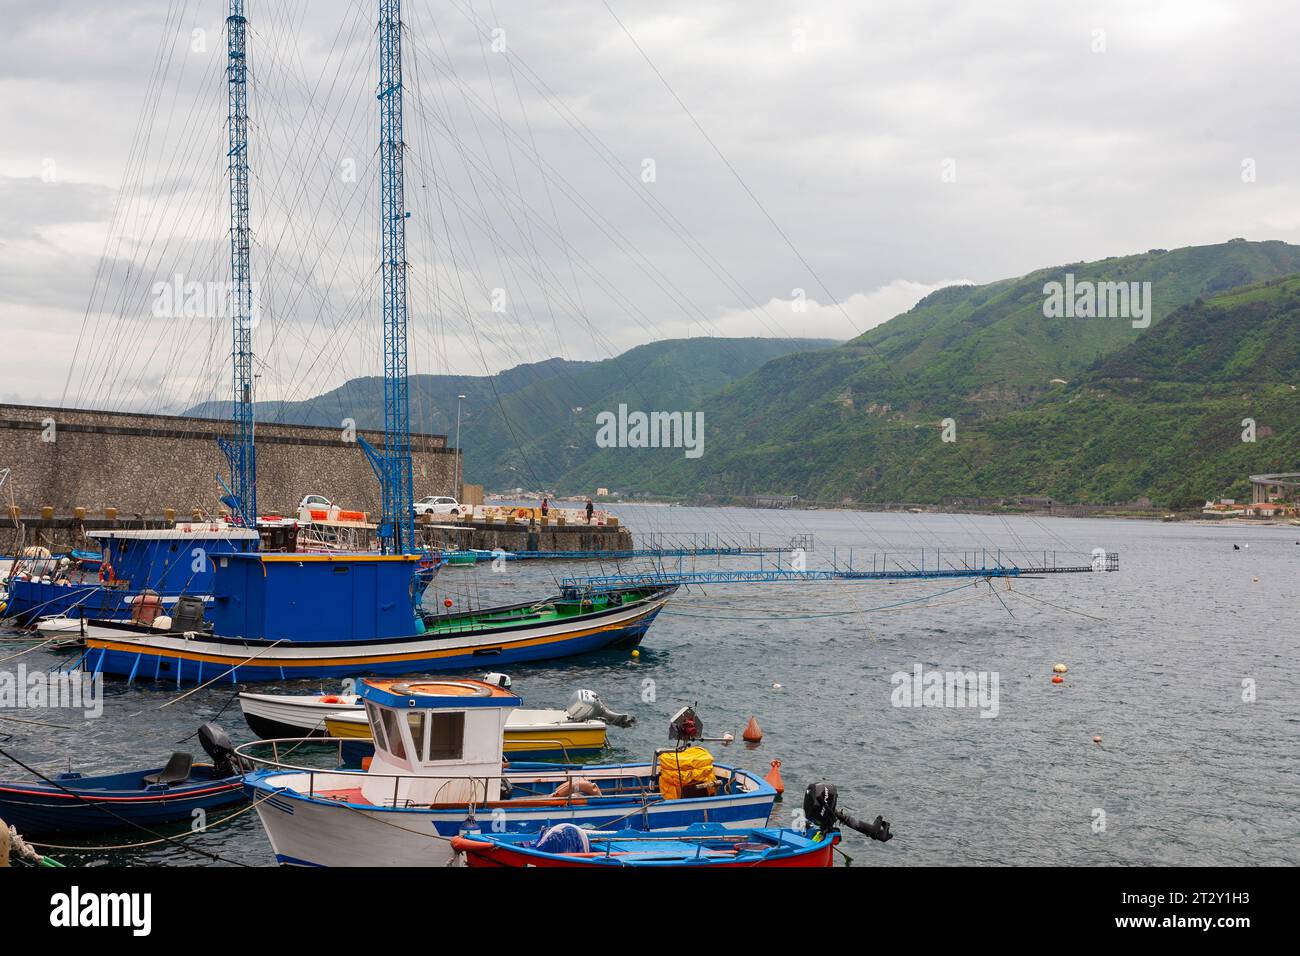 Der kleine Hafen von Scilla, Kalabrien, Süditalien, mit zwei charakteristischen Schwertfischbooten (Passarelle oder Spadara), die am Kai ankern Stockfoto